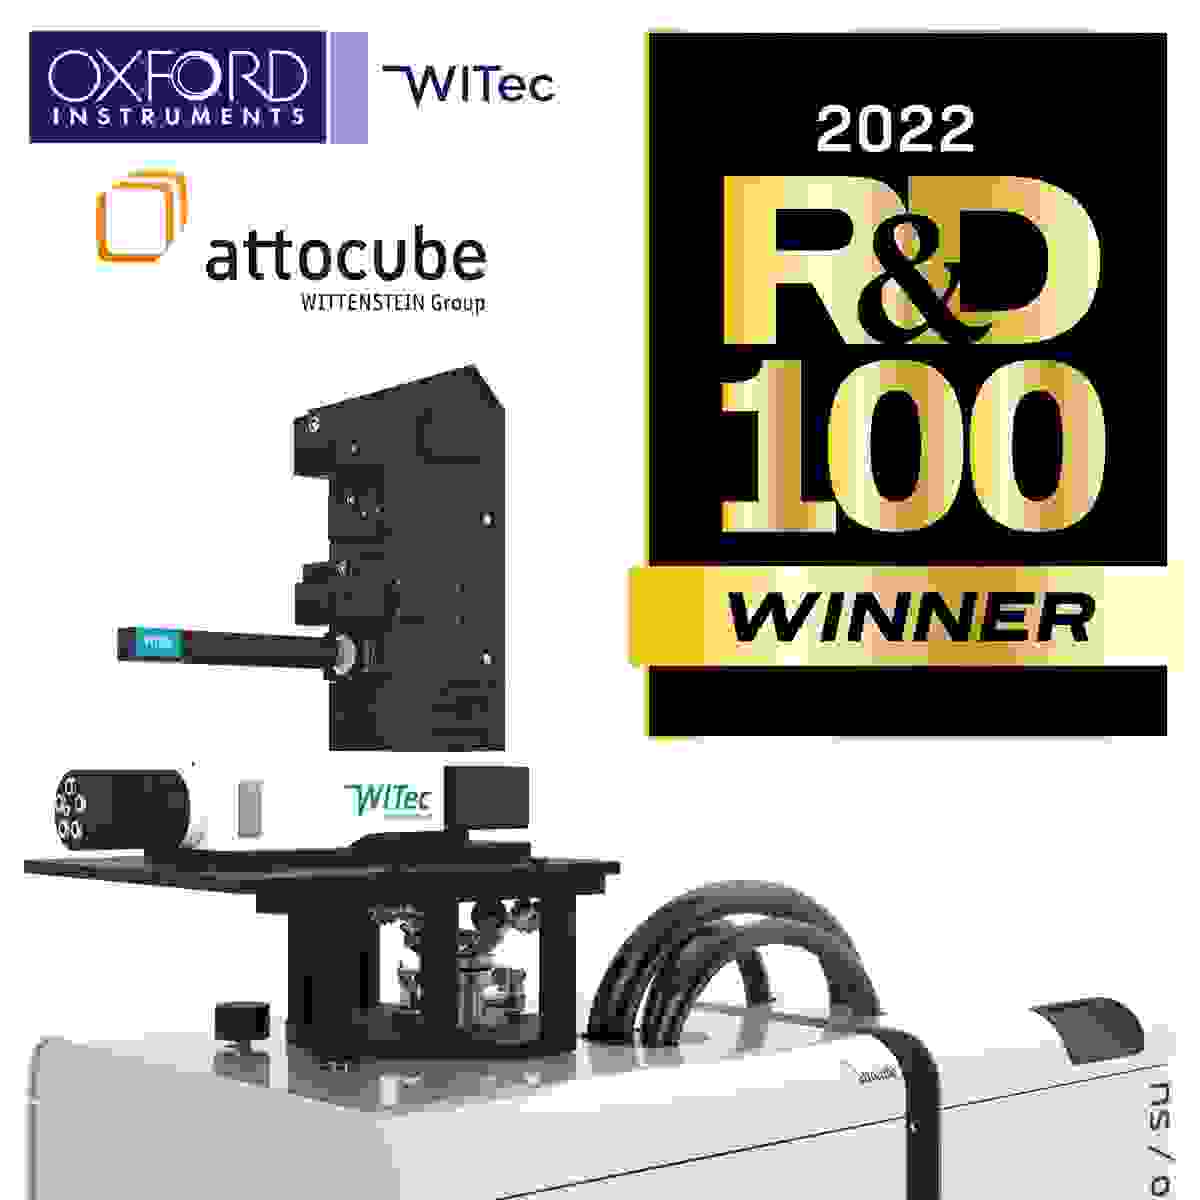 cryoRaman: R&D 100 Award を受賞